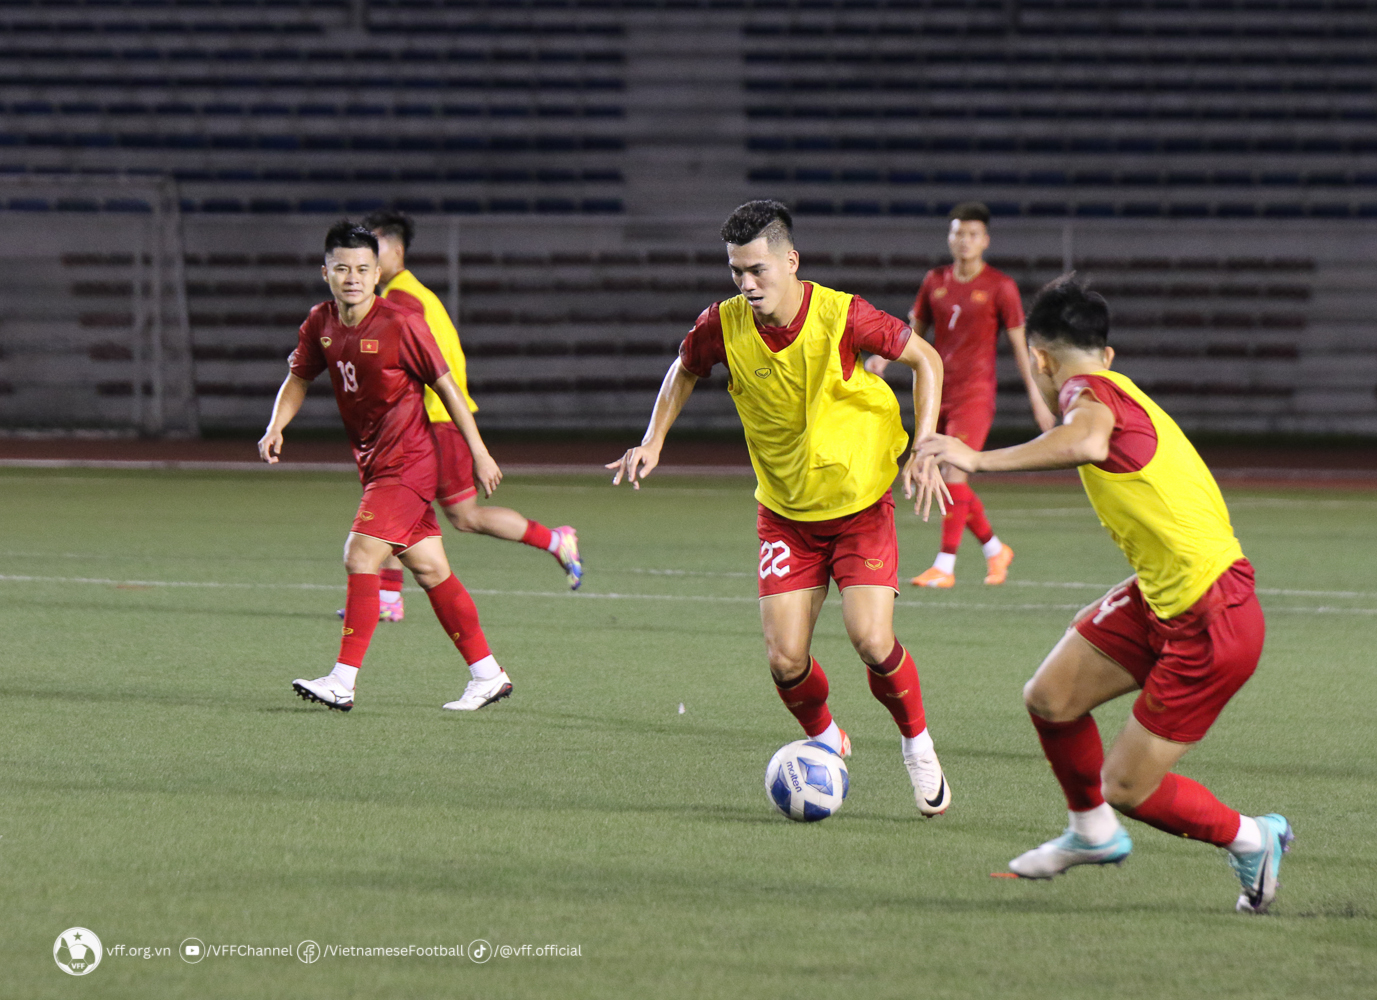 Tin cực vui, FPT Play thành công bản quyền trận đội tuyển Việt Nam - Philippines - Ảnh 1.